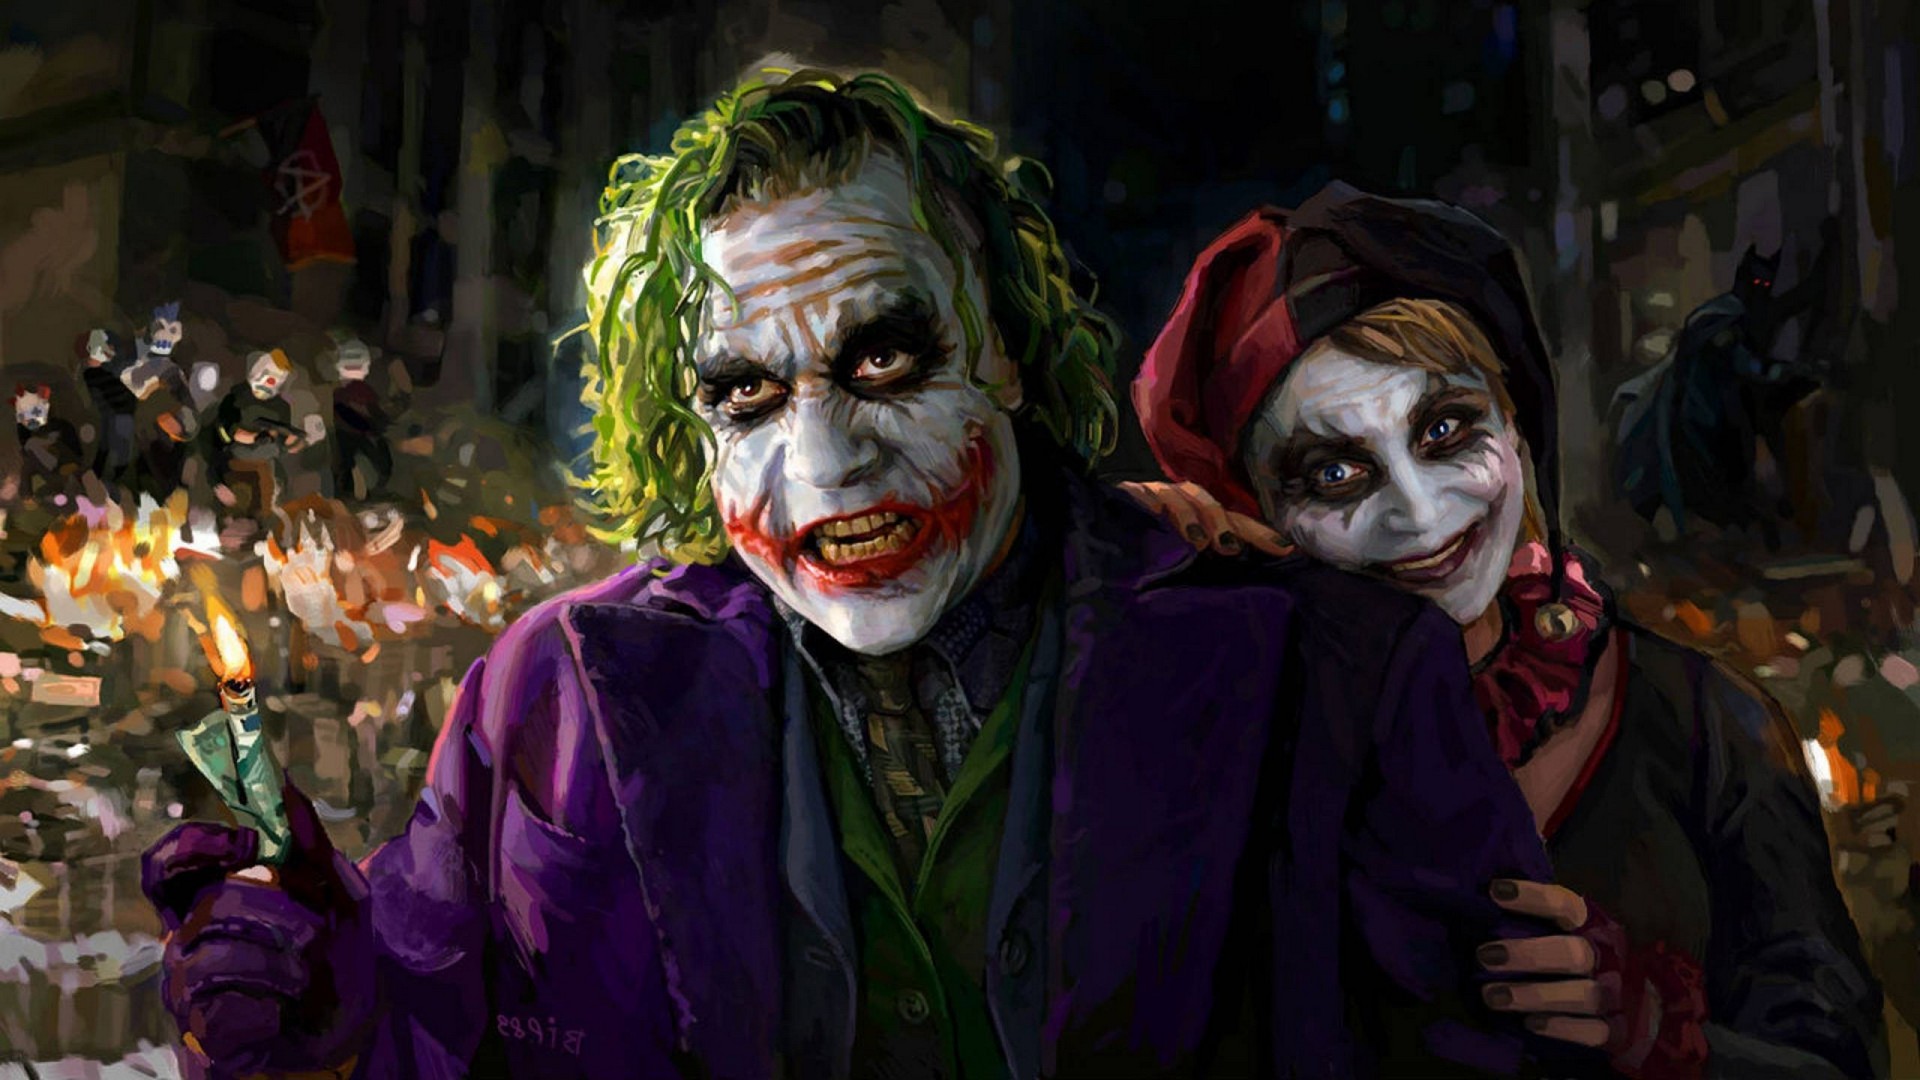 joker live wallpaper,joker,supervillain,fictional character,clown,batman